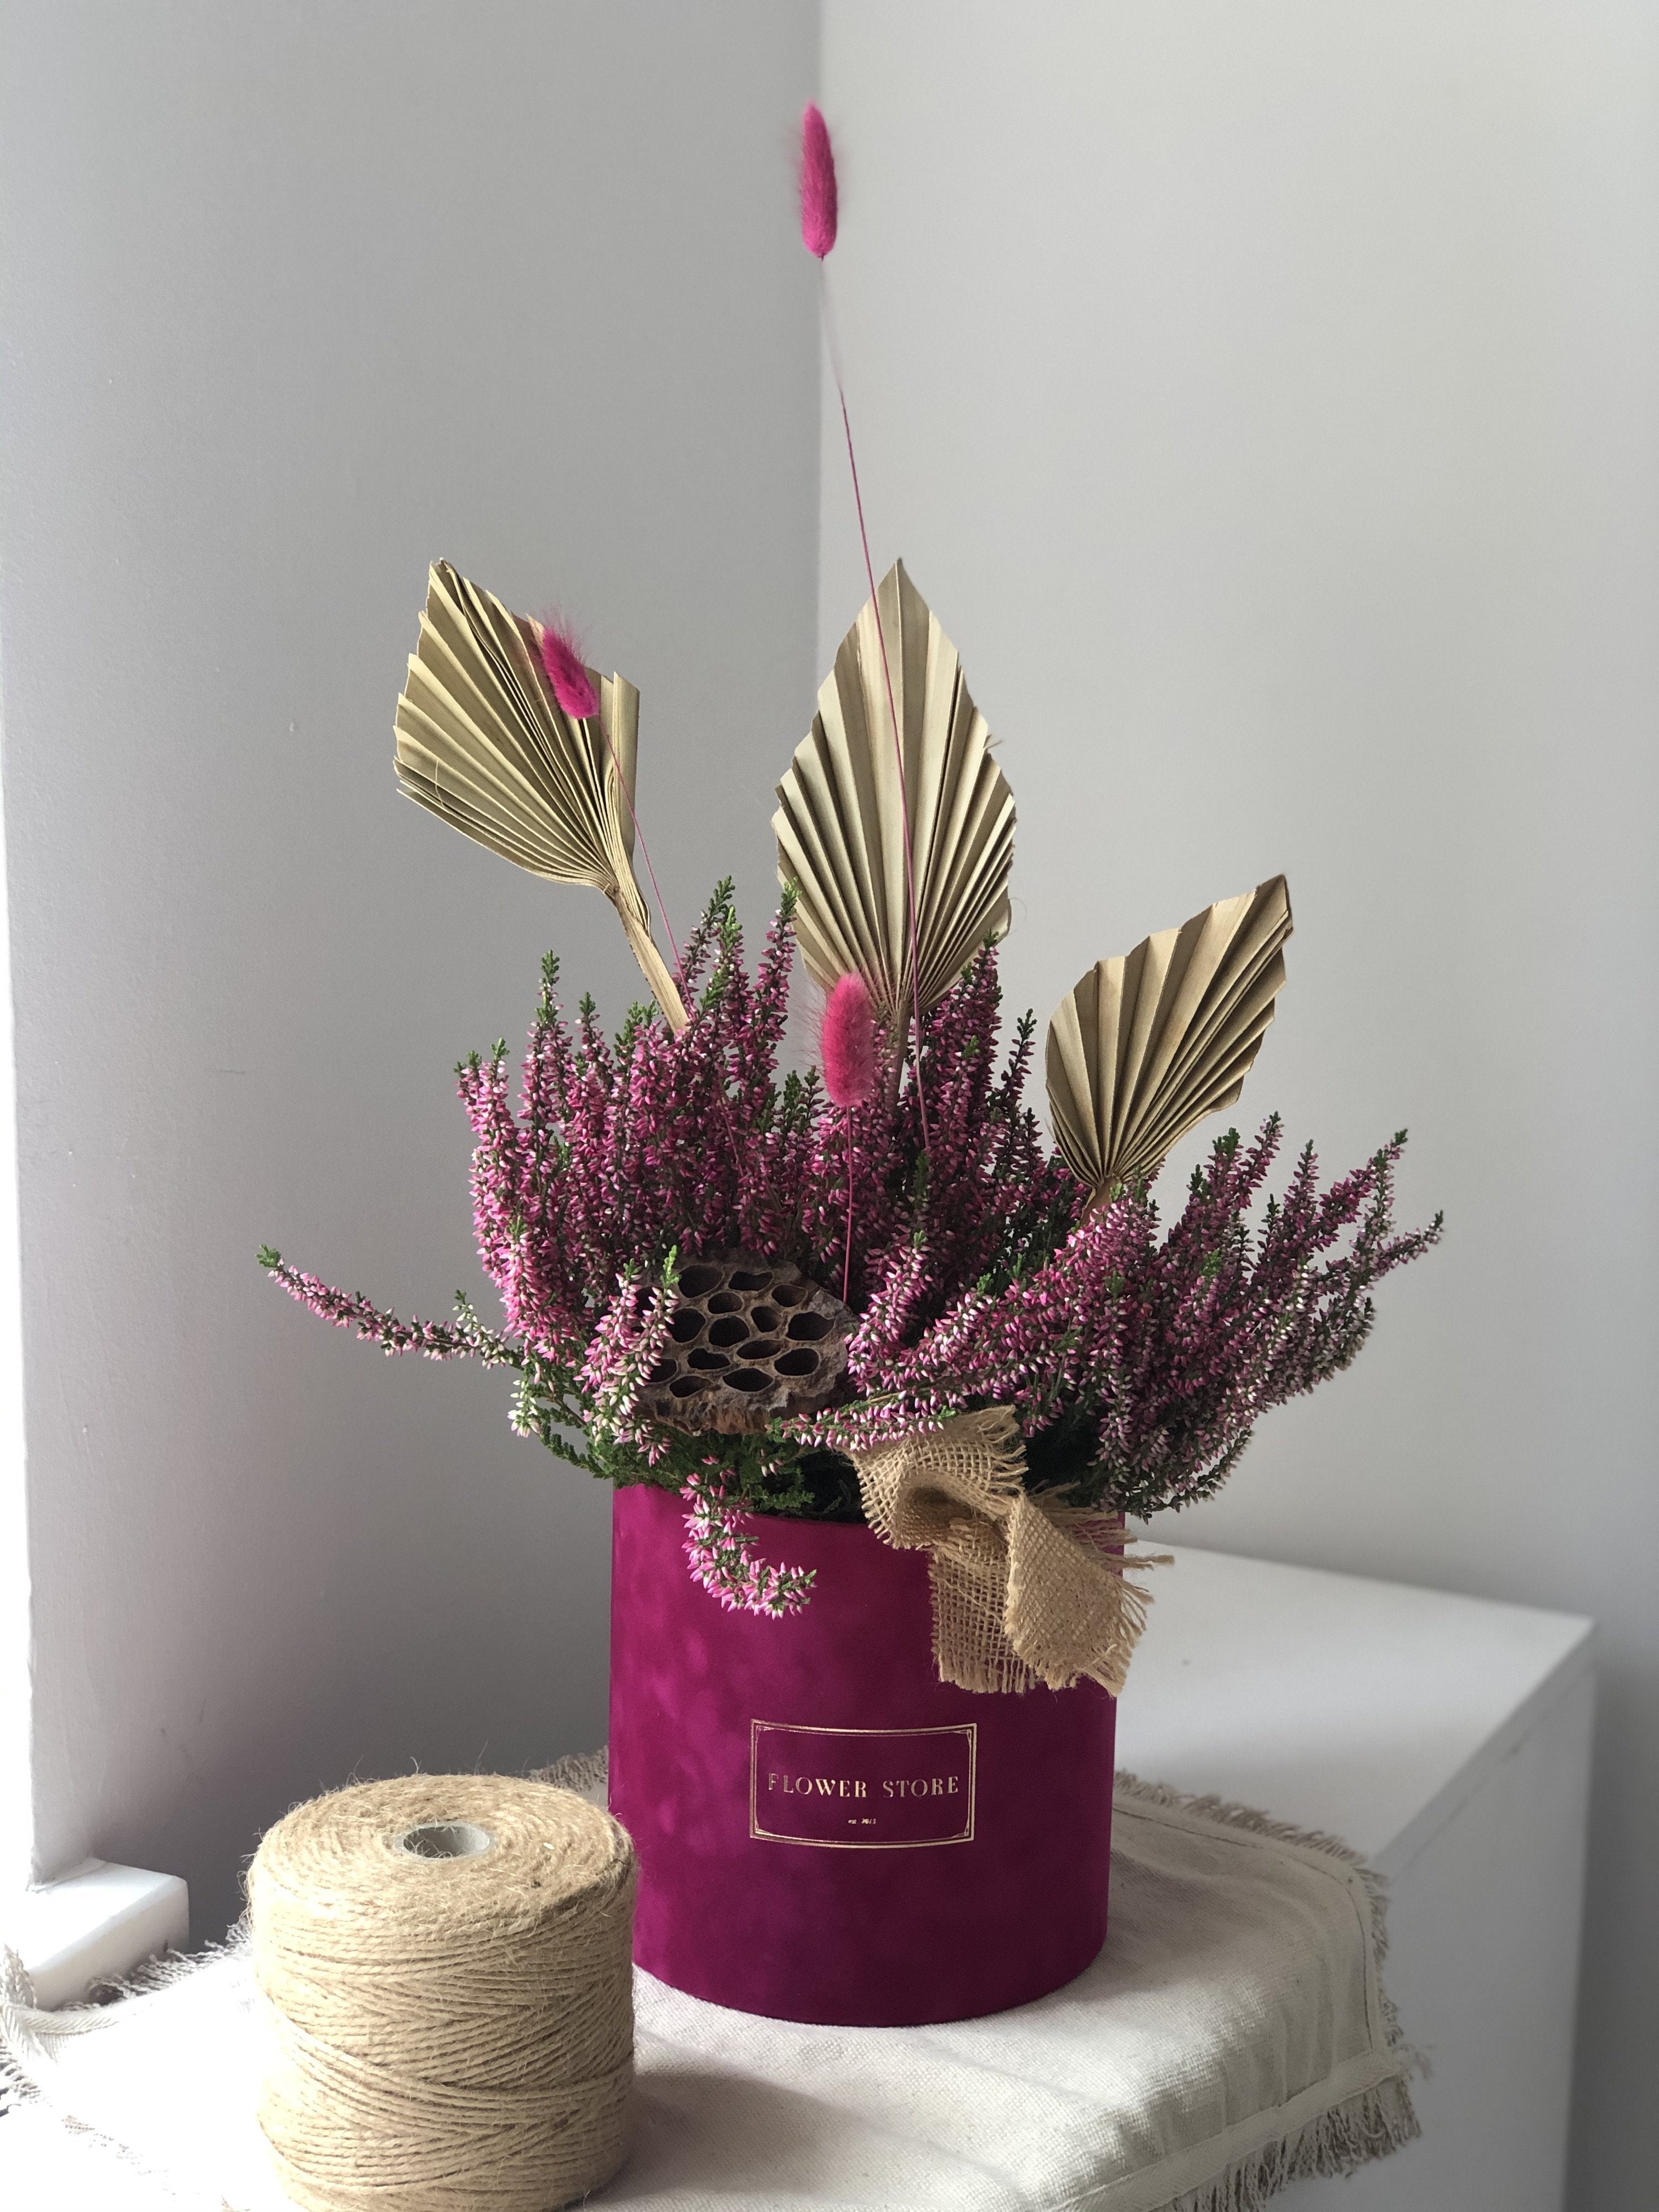 Флокированная цветочная коробочка цвета фуксии с осенней композицией - вереск